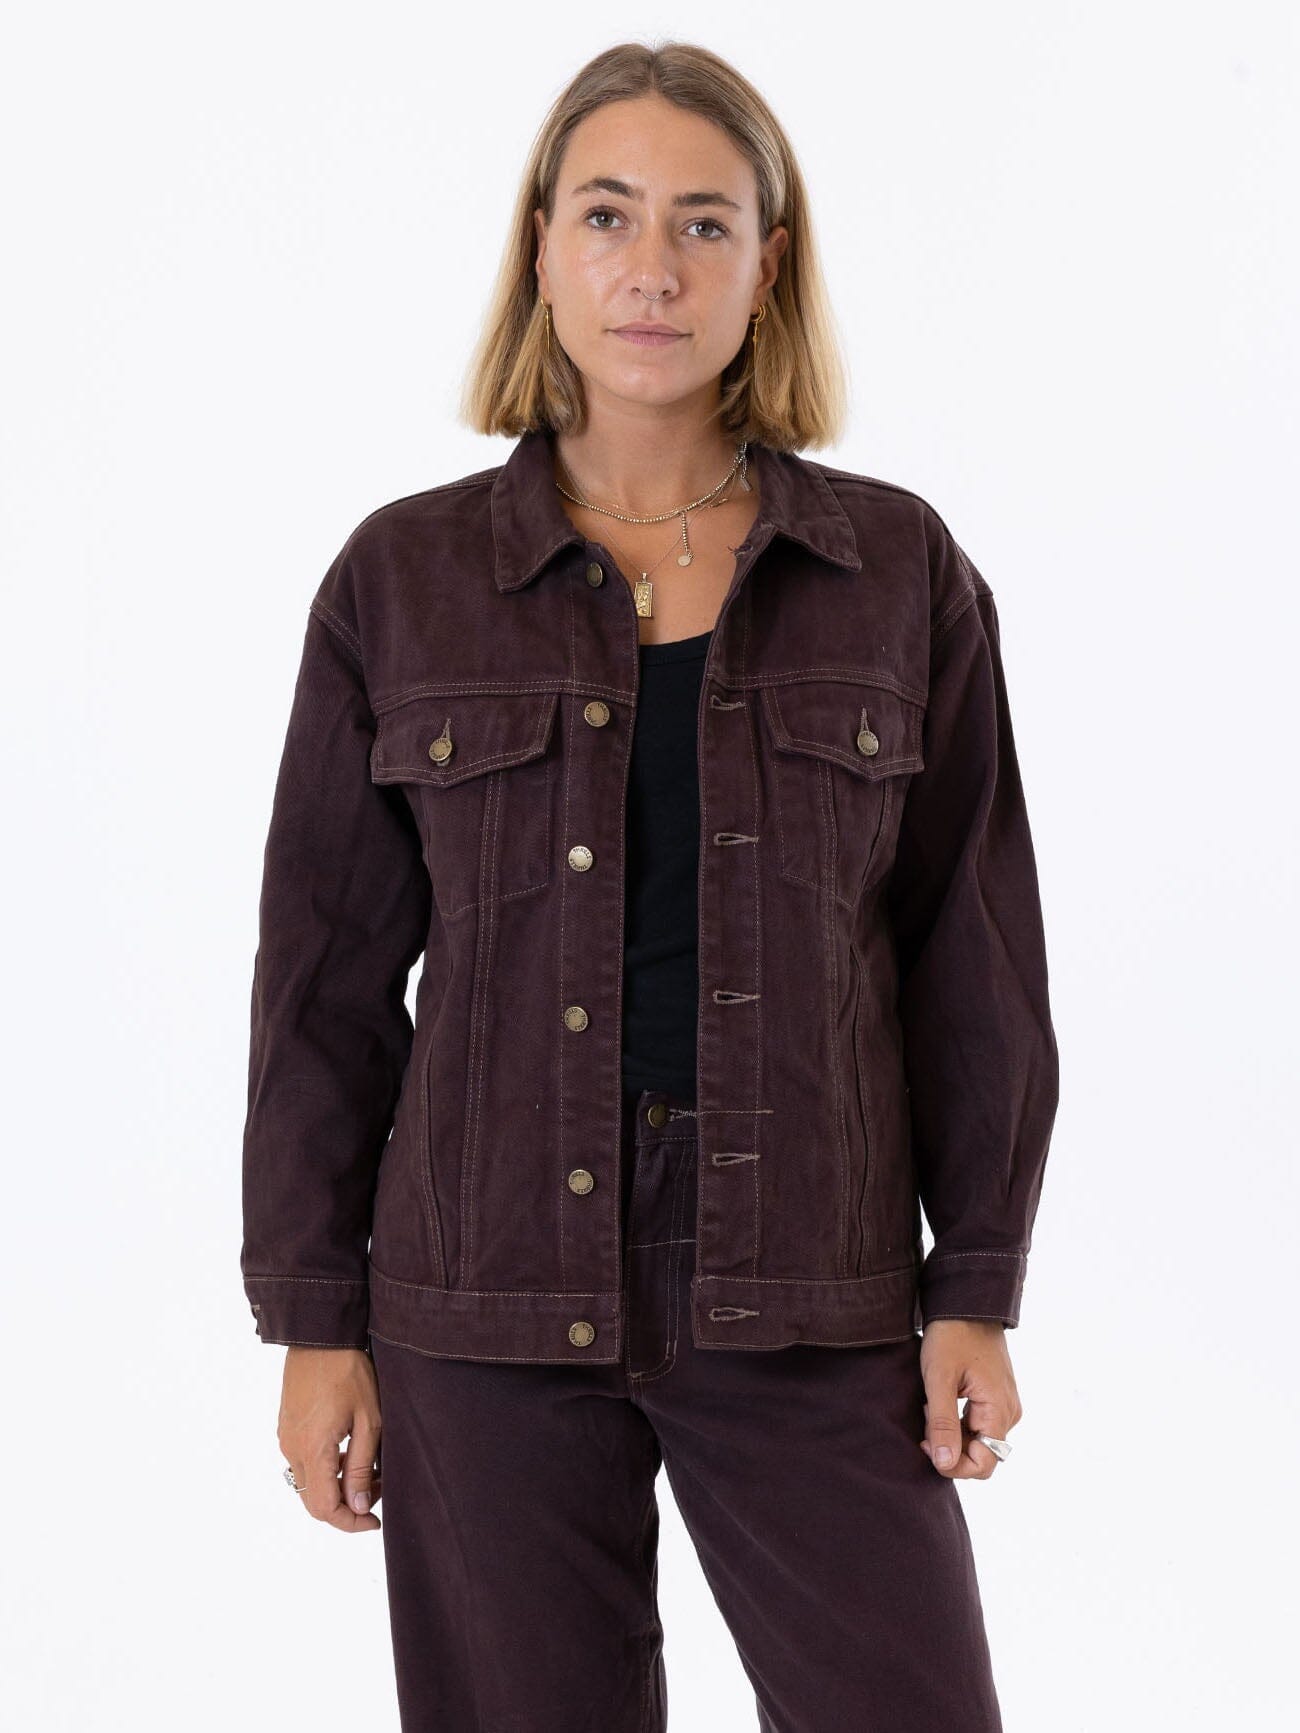 Women's Denim Jacket | VerClare Boutique | Chenoa, IL